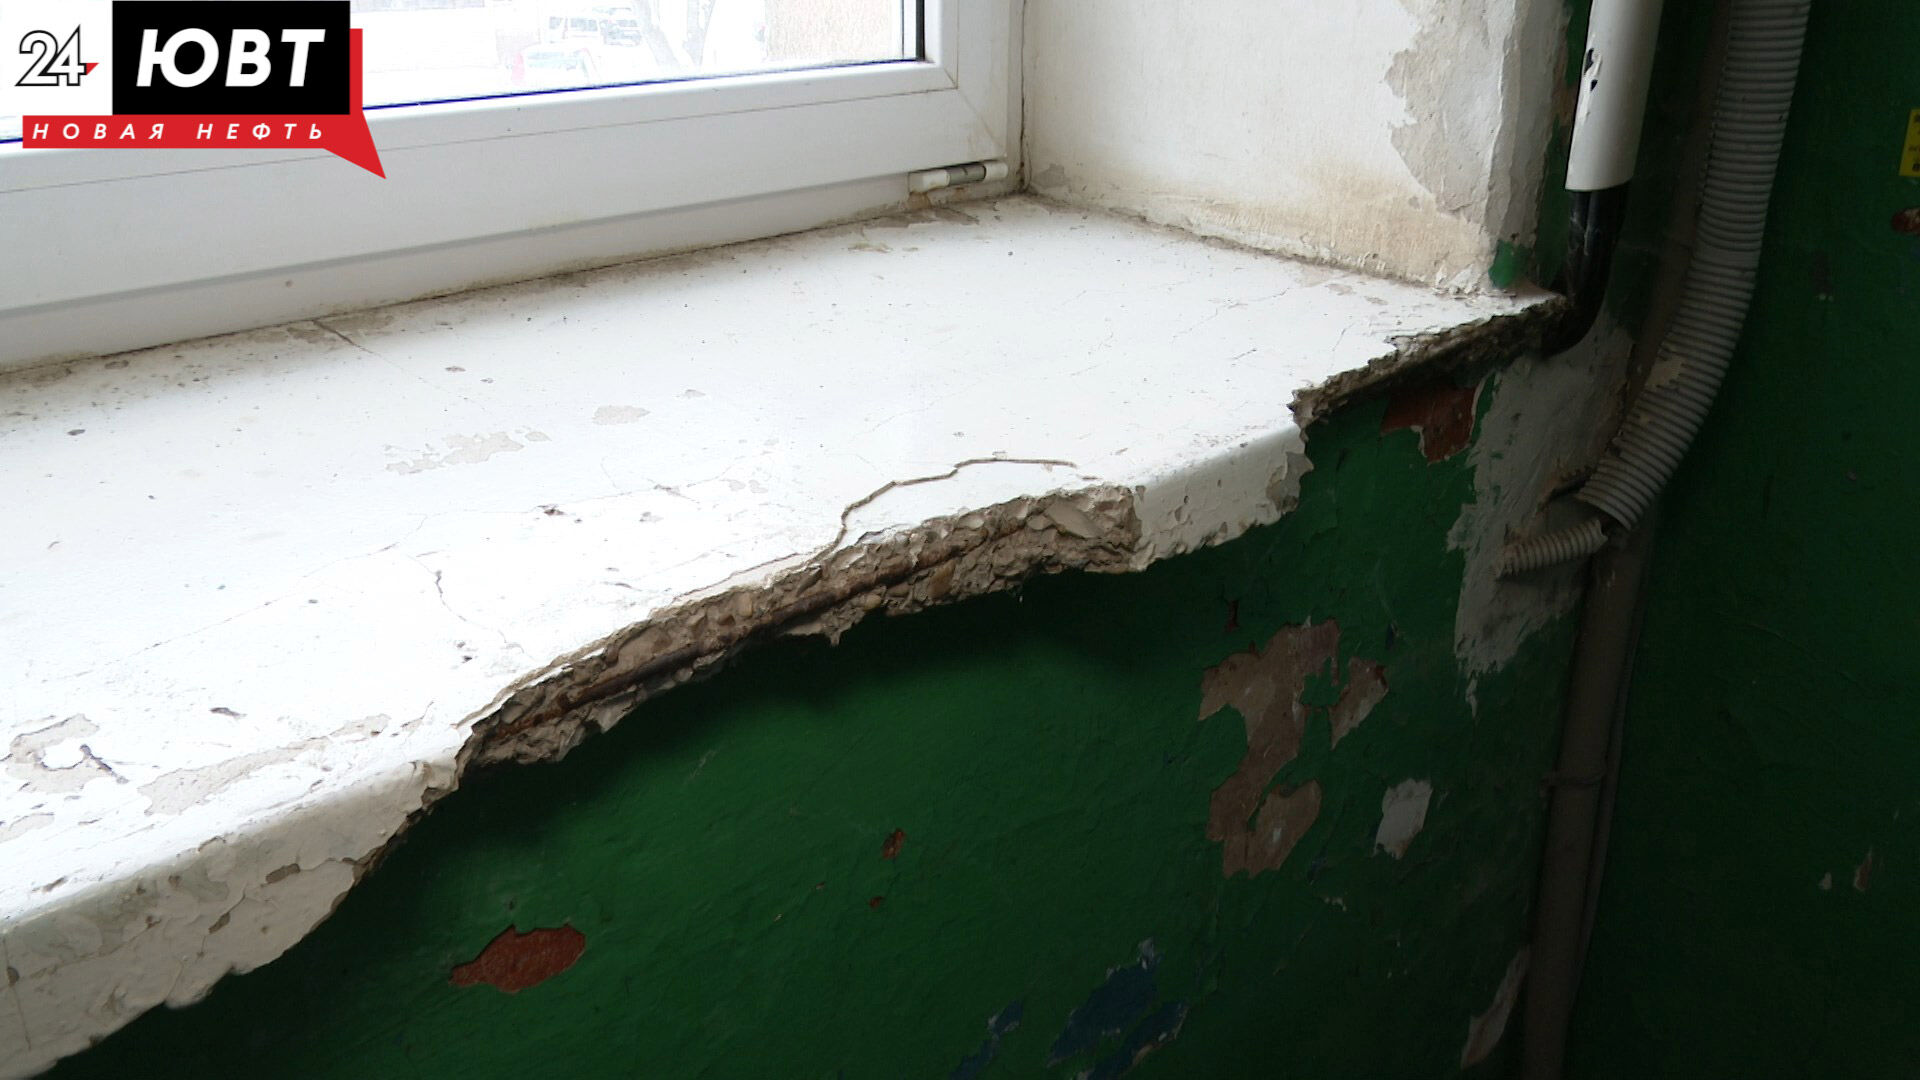 Облупившаяся краска, сырость и неприятный запах: жители дома в Альметьевске требуют ремонта